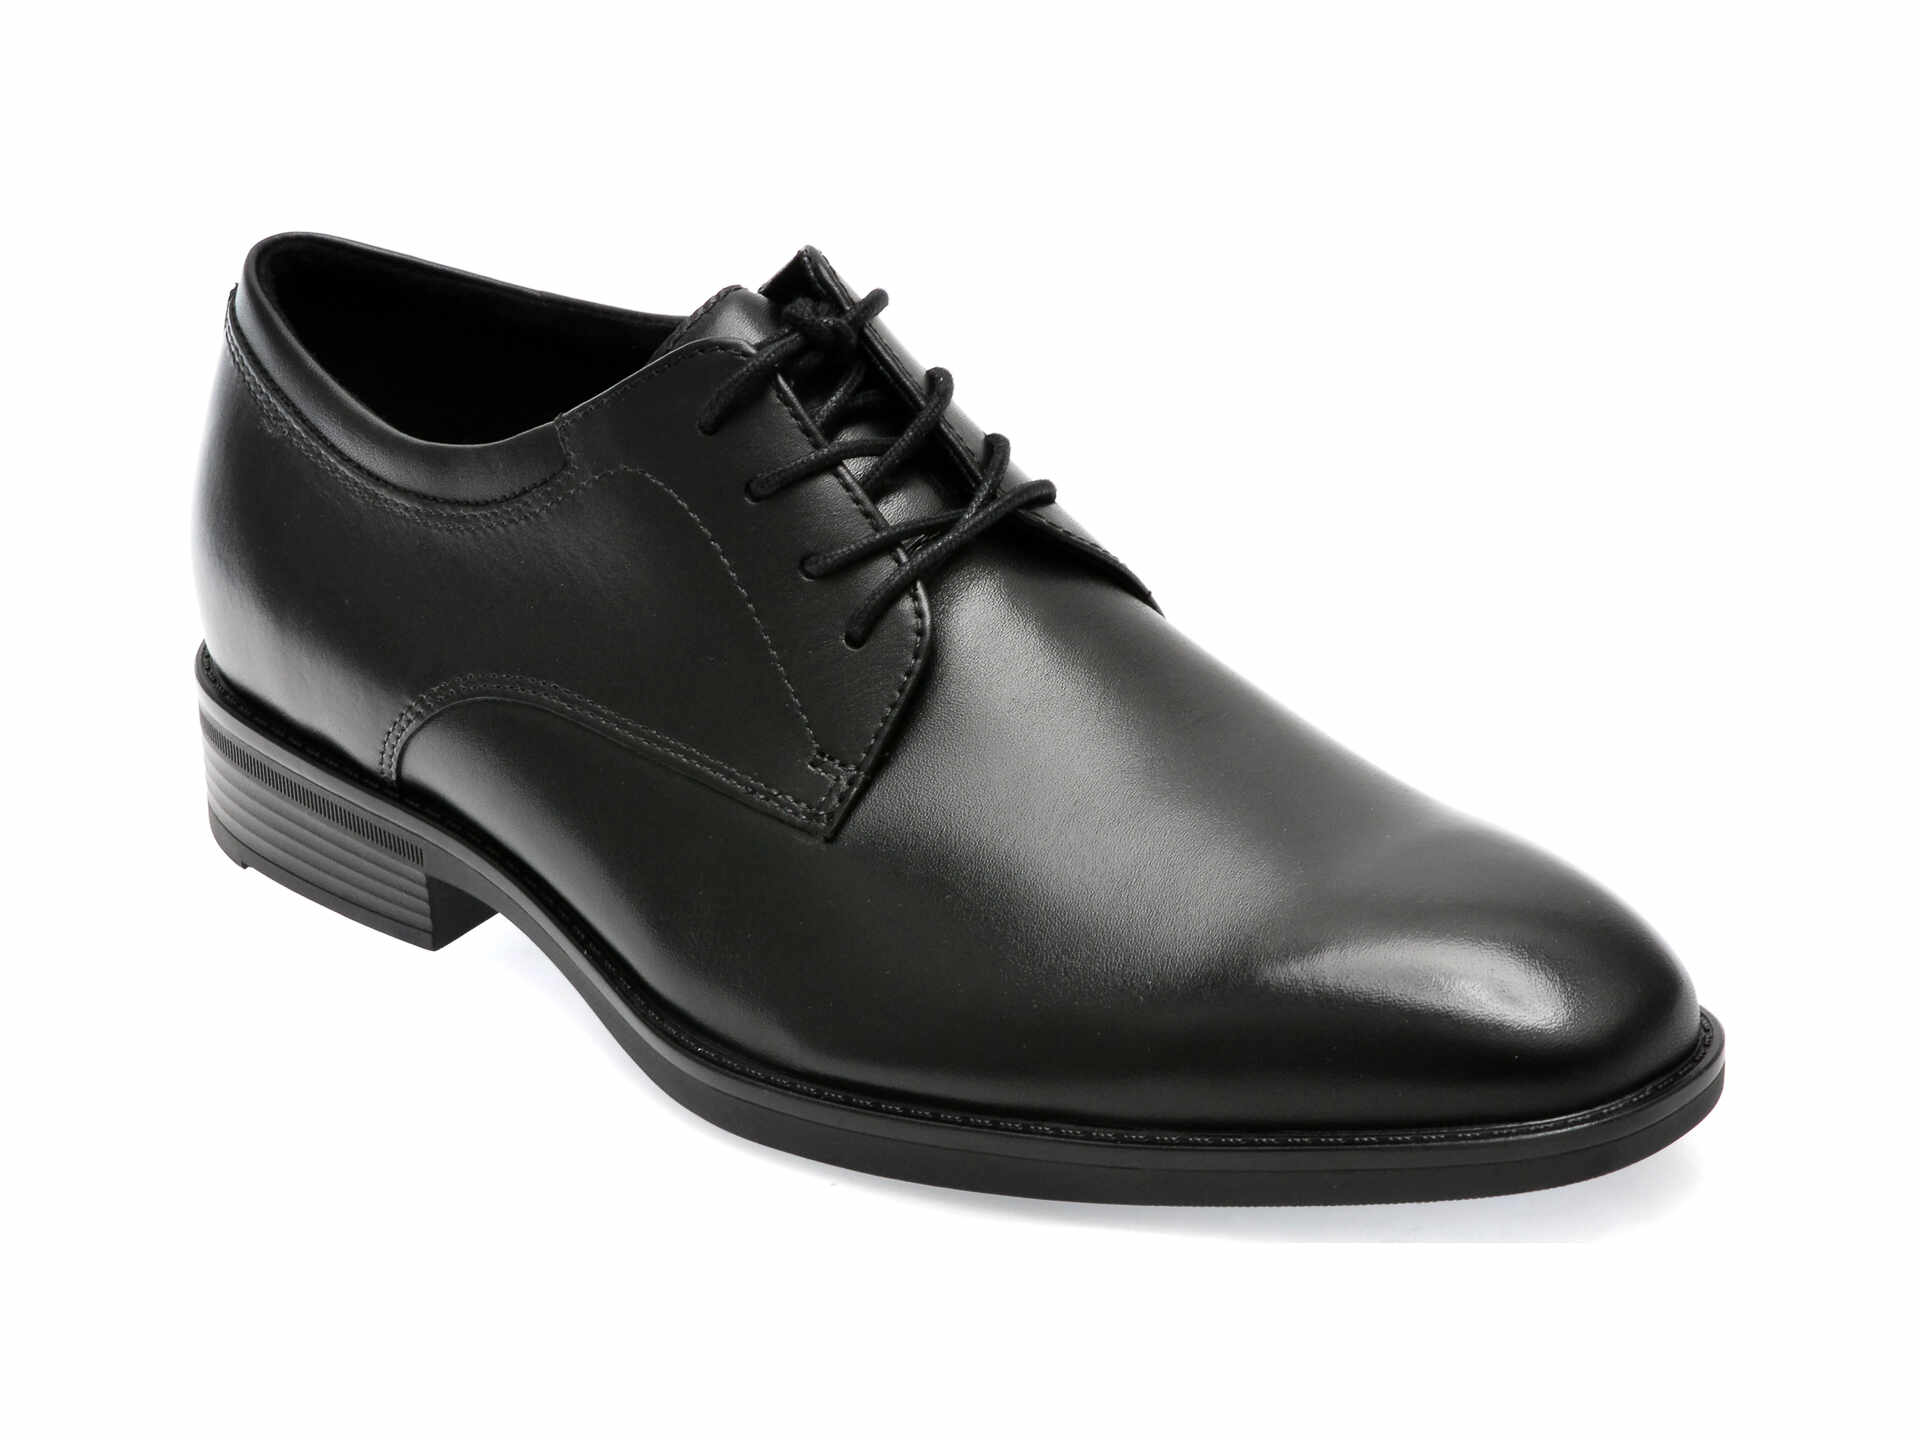 Pantofi ALDO negri, KEAGAN001, din piele naturala